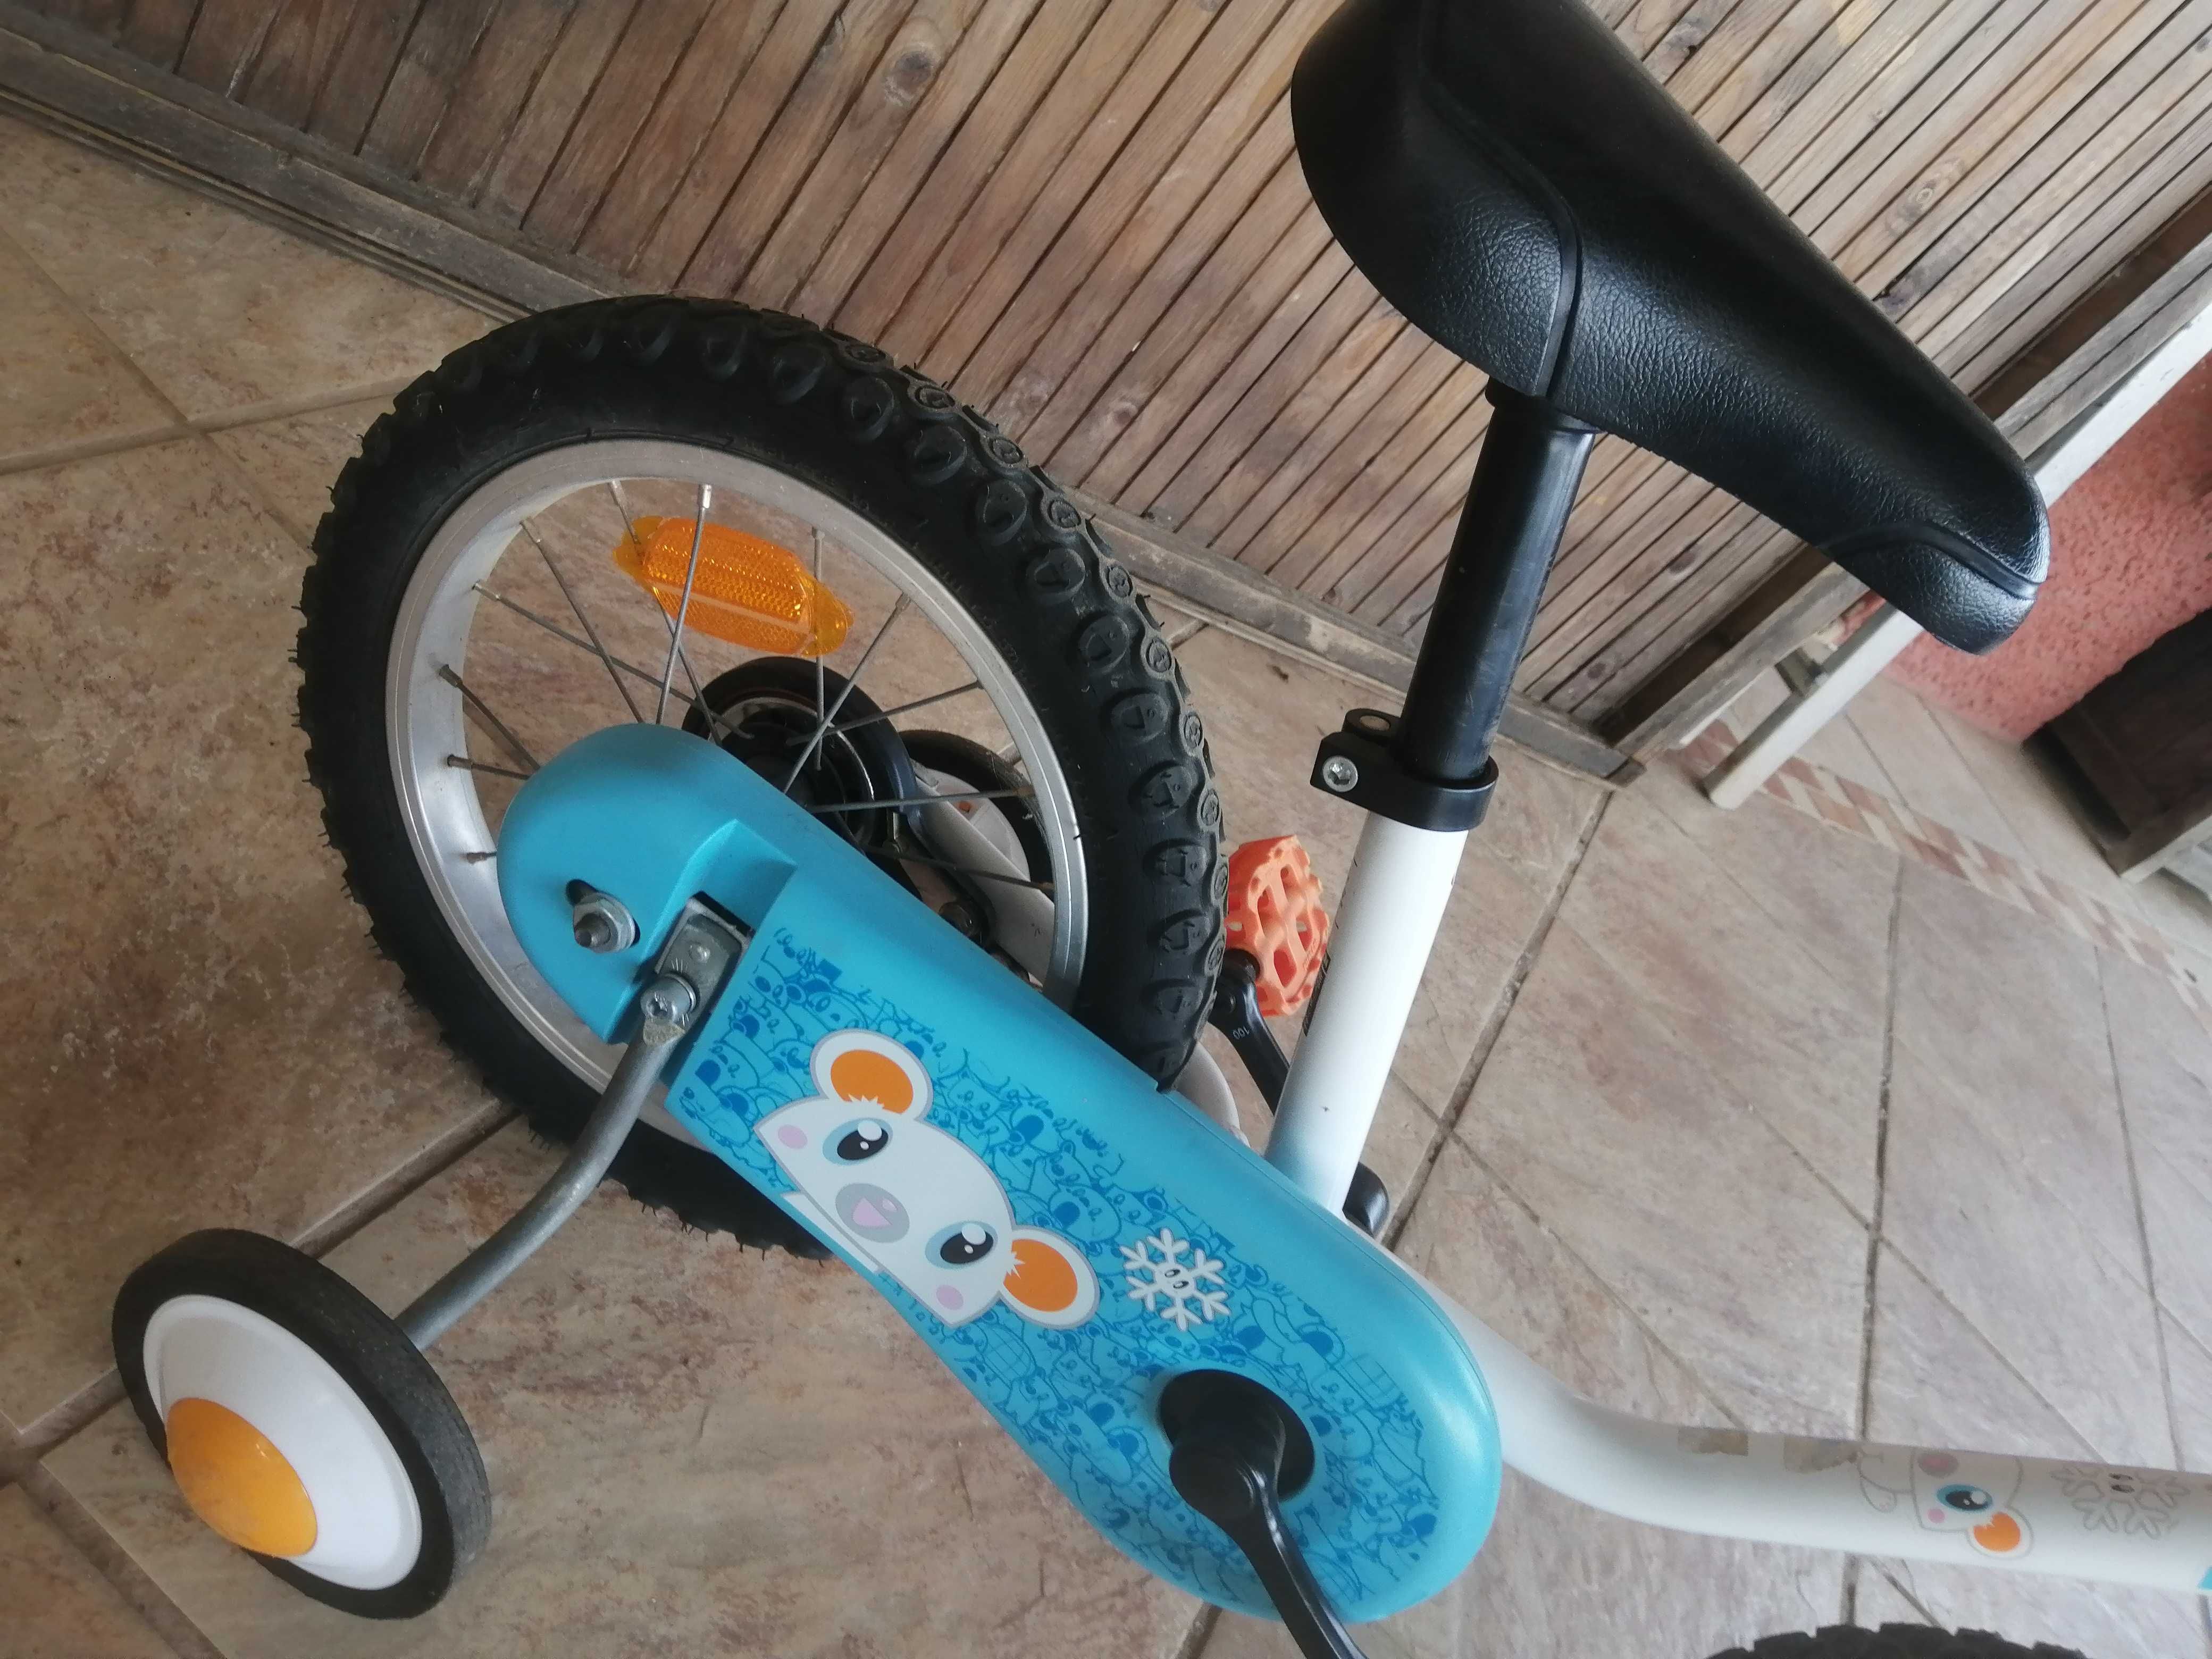 Bicicleta criança 3-5 anos